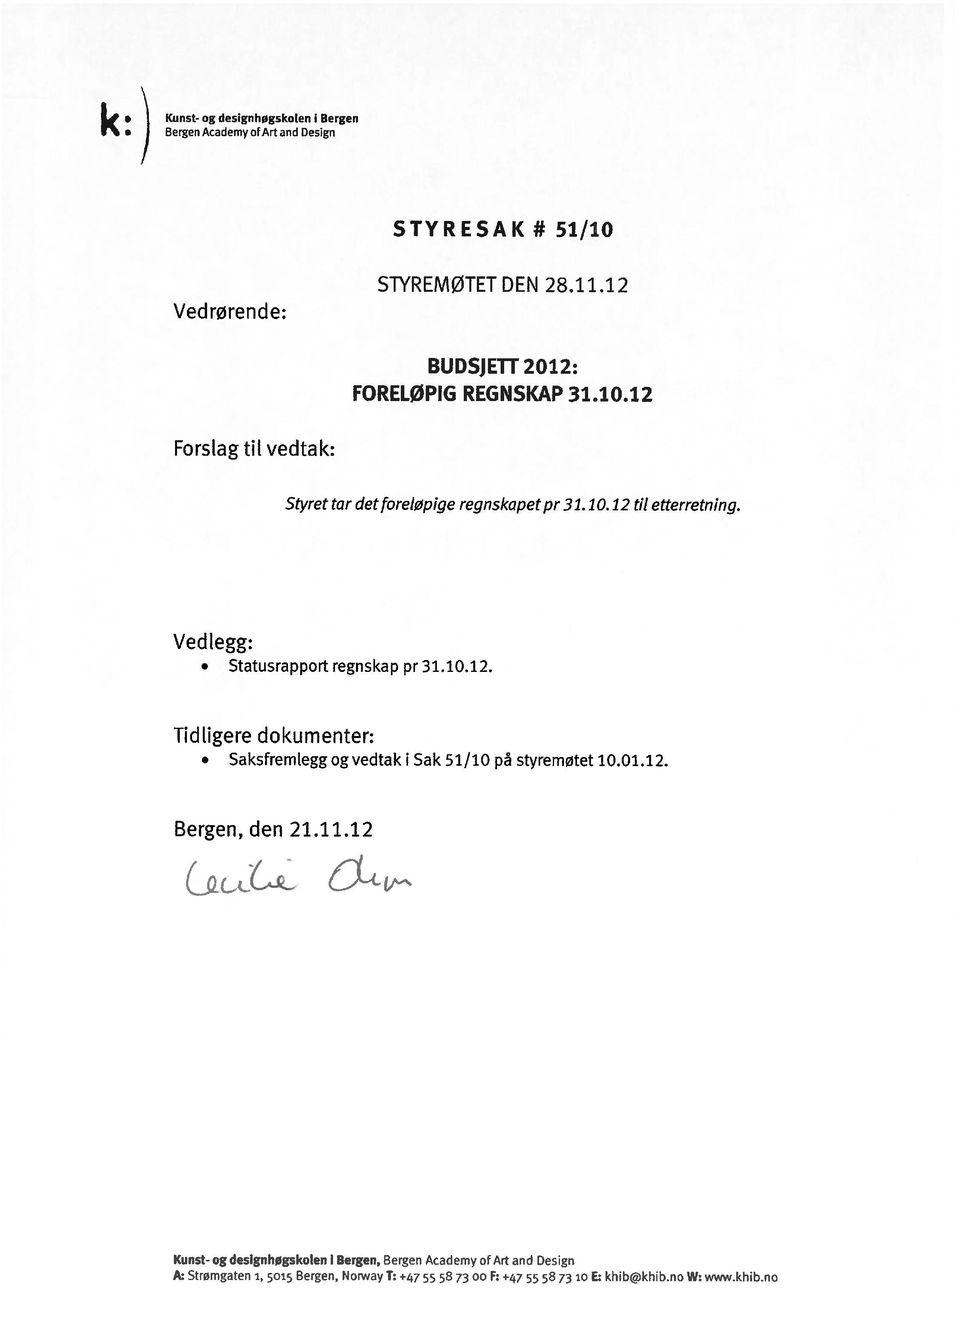 Ved legg: Statusrapport regnskap pr 31.1.12. Tidligere dokumenter: Saksfremlegg og vedtak i Sak 51/1 på styremøtet 1.1.12. Bergen, den 21.